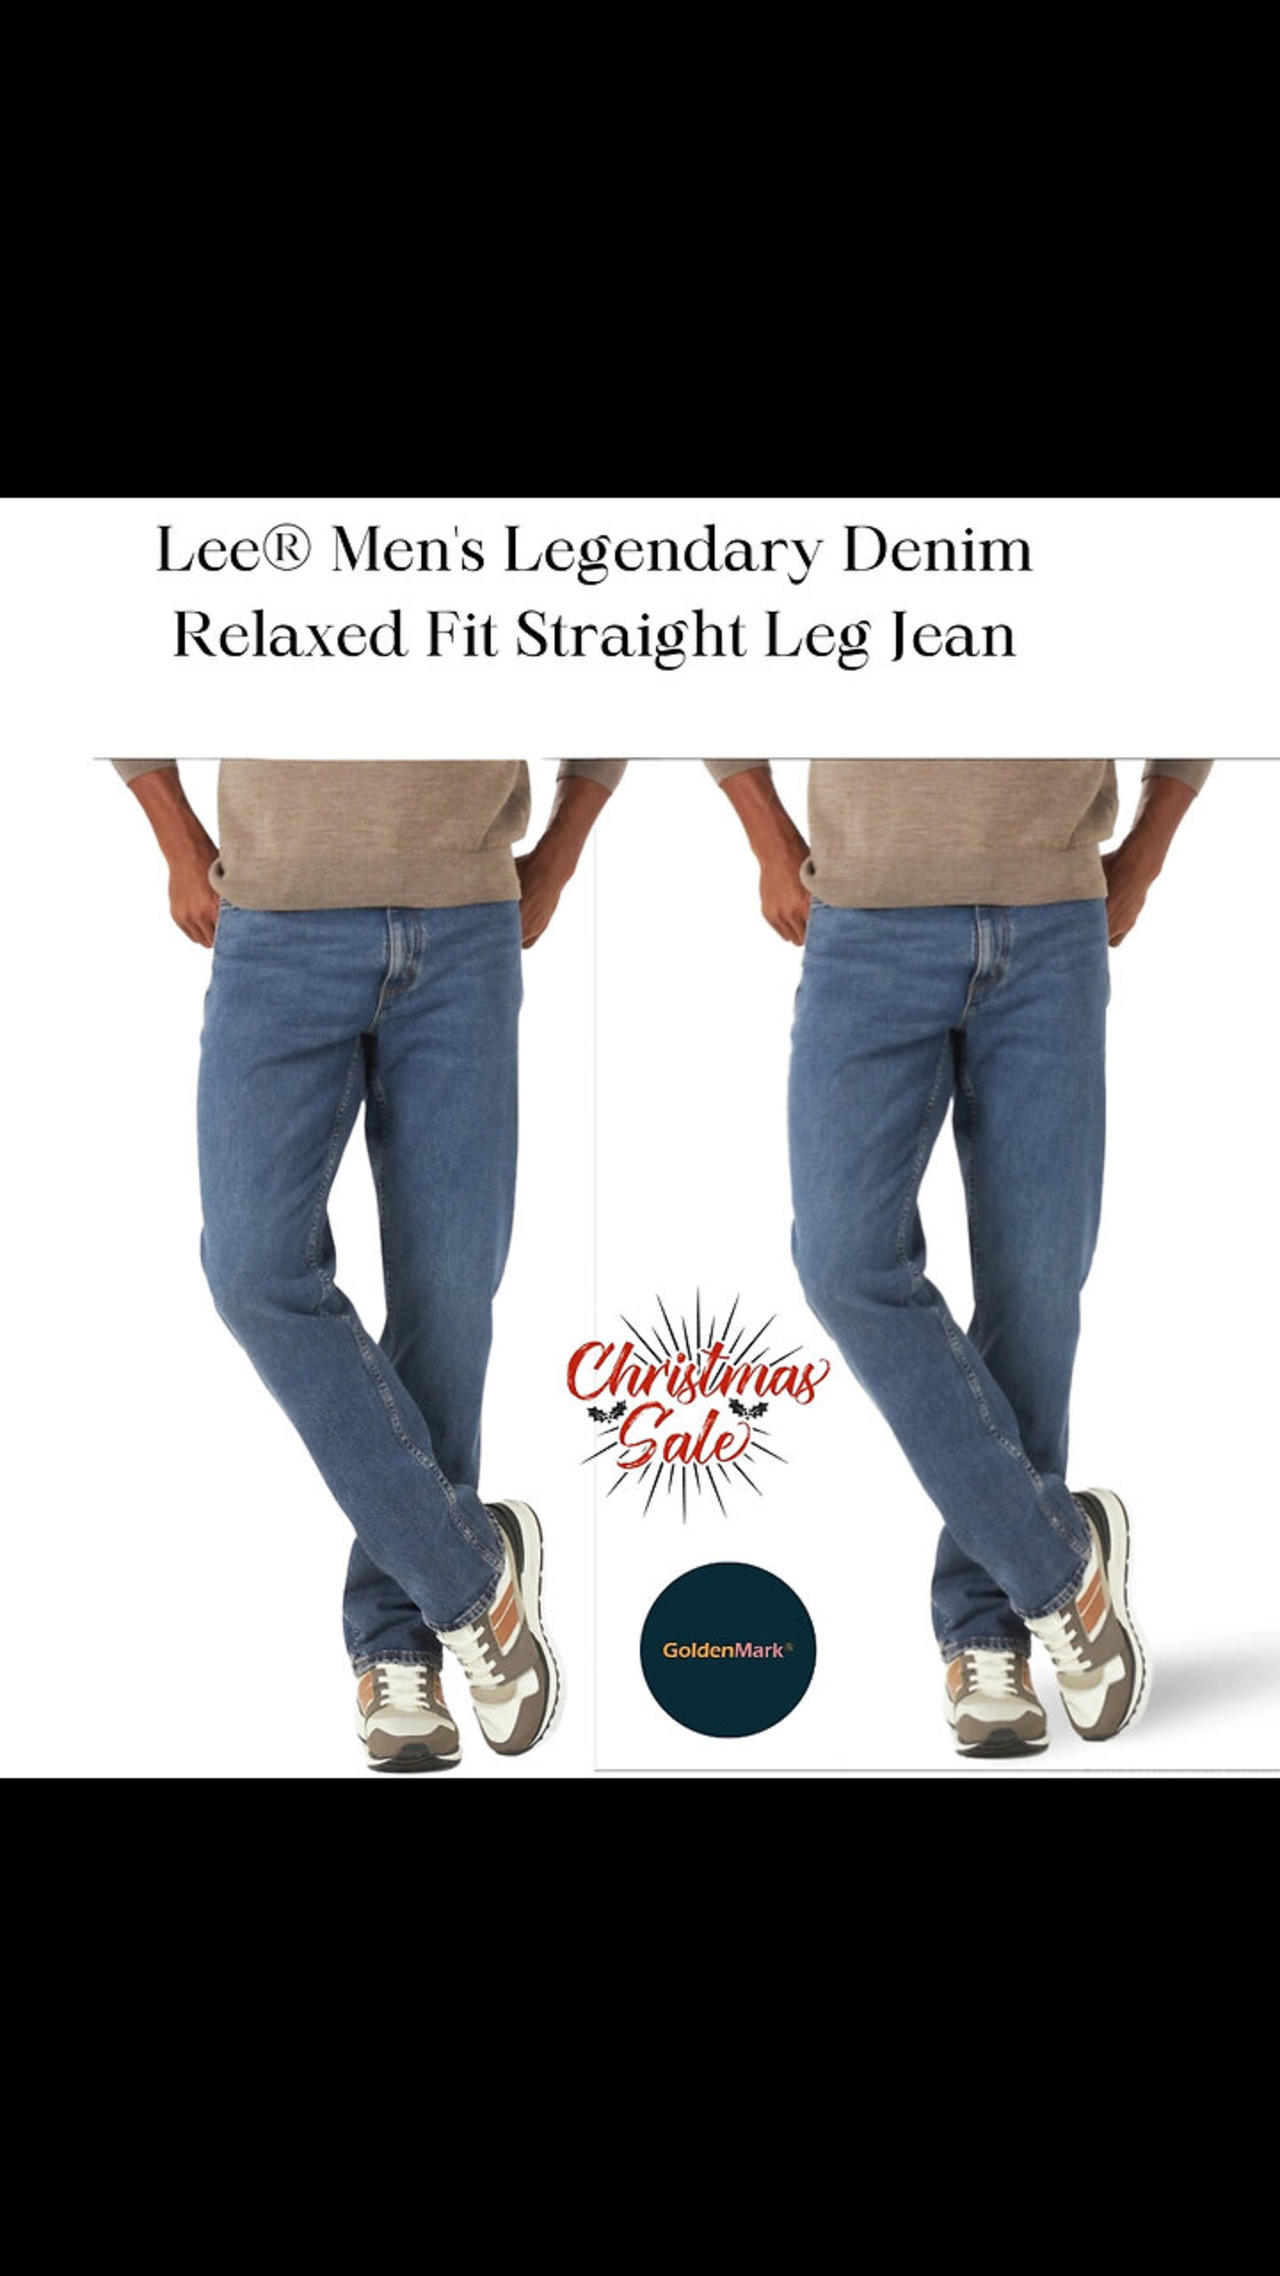 Lee® Men's Legendary Denim Relaxed Fit Straight Leg Jean